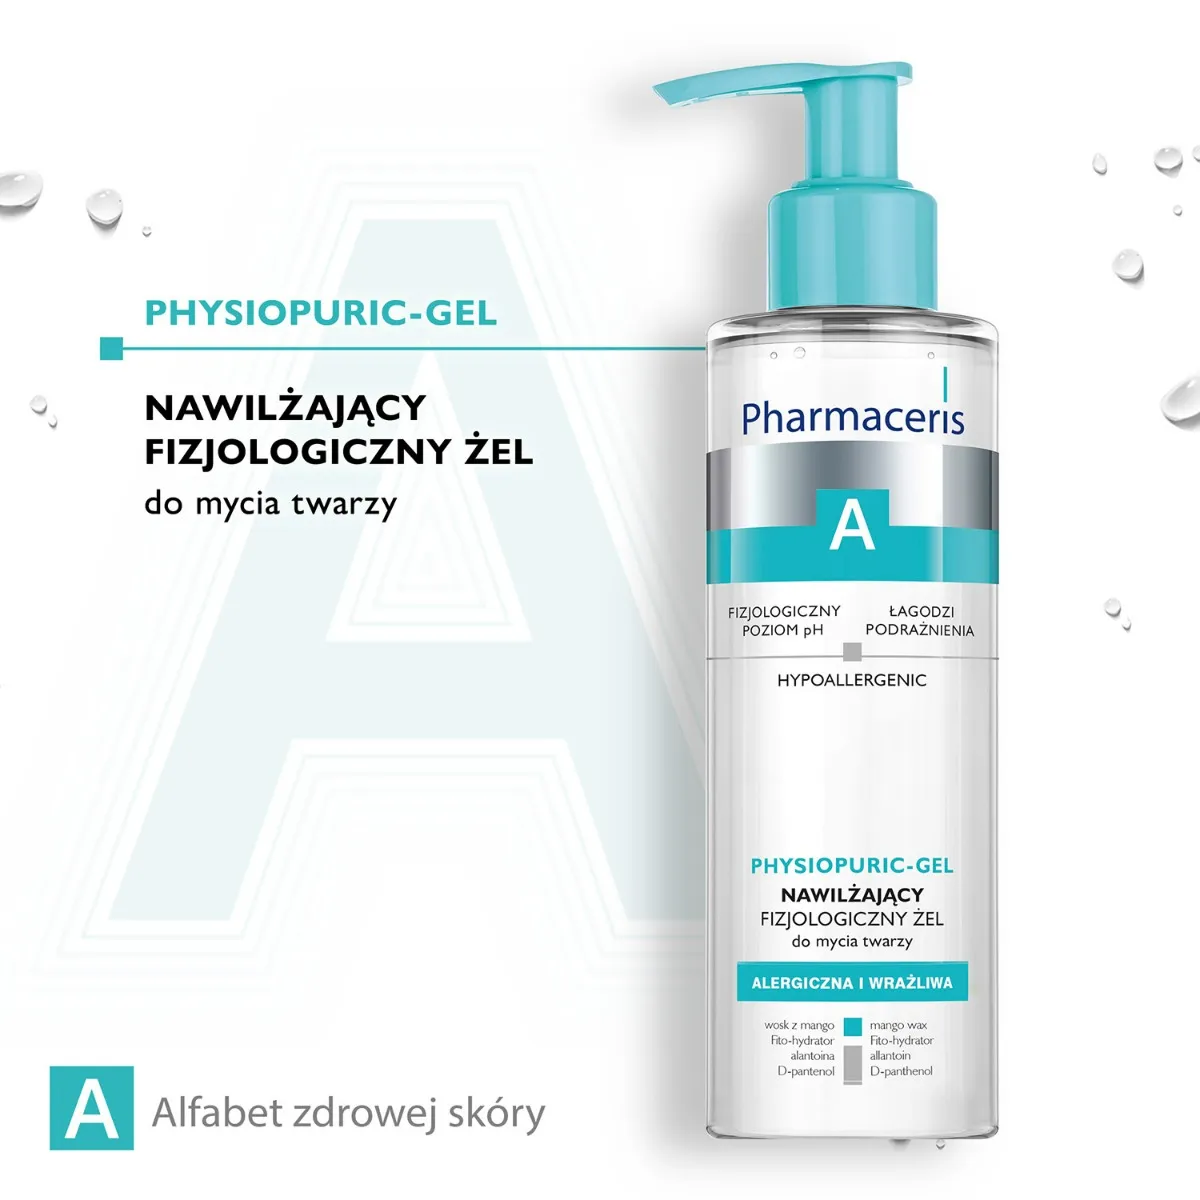 Pharmaceris A Physiopuric-gel, nawilżający fizjologiczny żel do mycia twarzy, 190 ml 